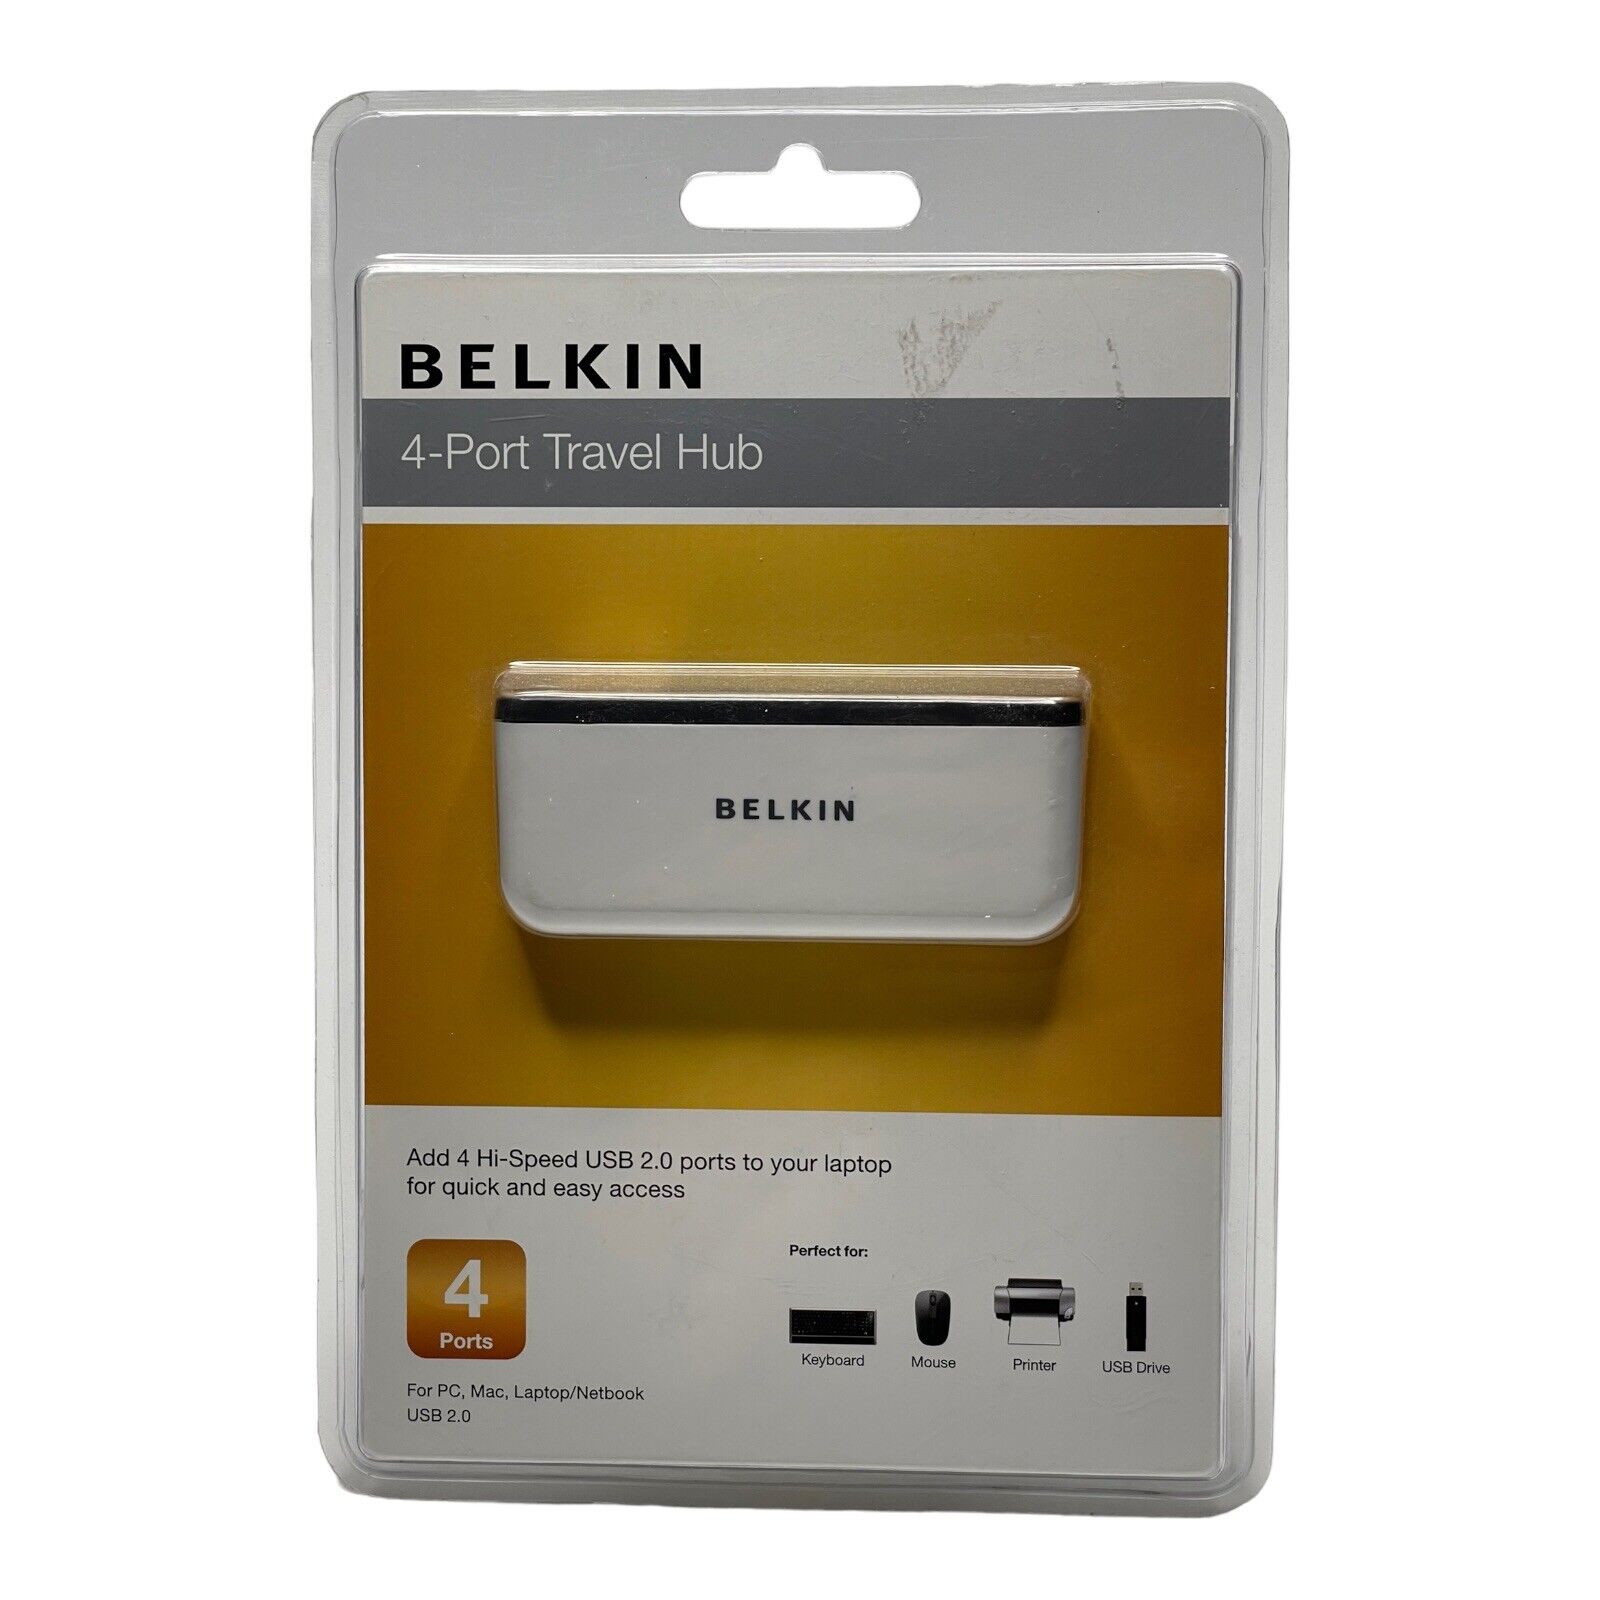 Belkin 4-Port Travel Hub